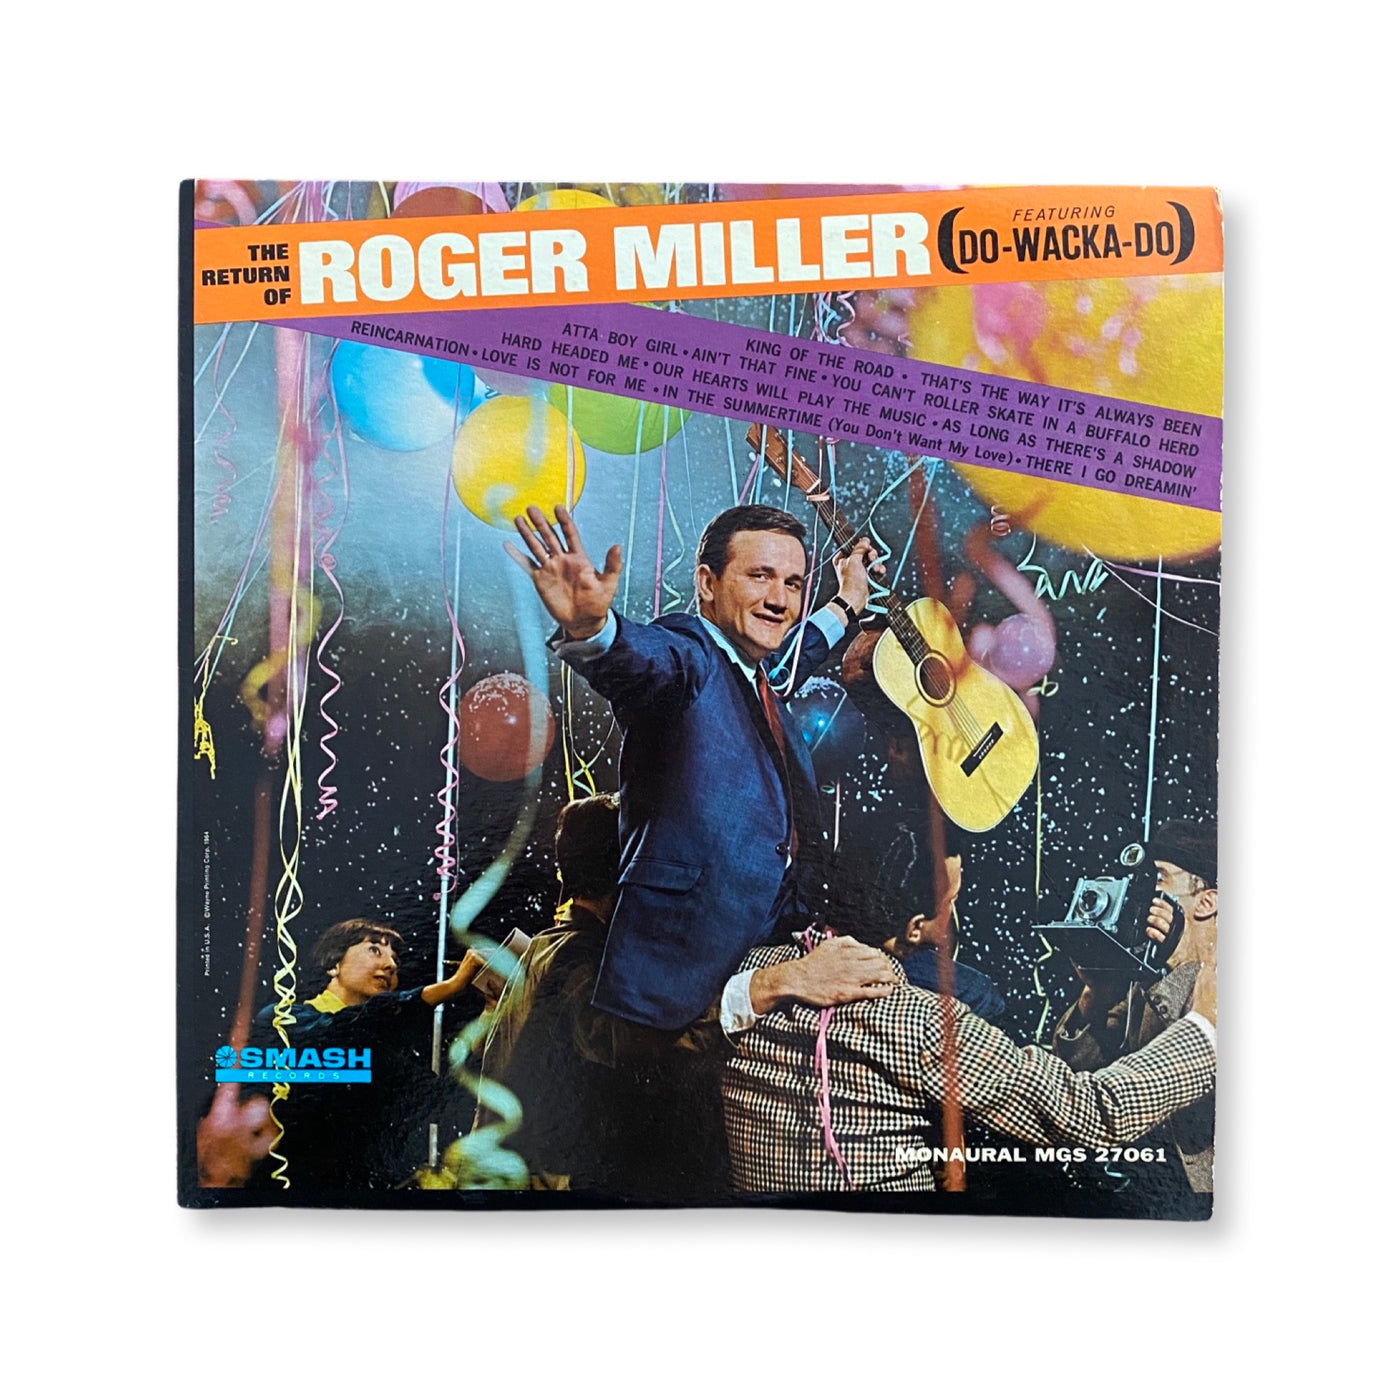 Roger Miller - The Return Of Roger Miller